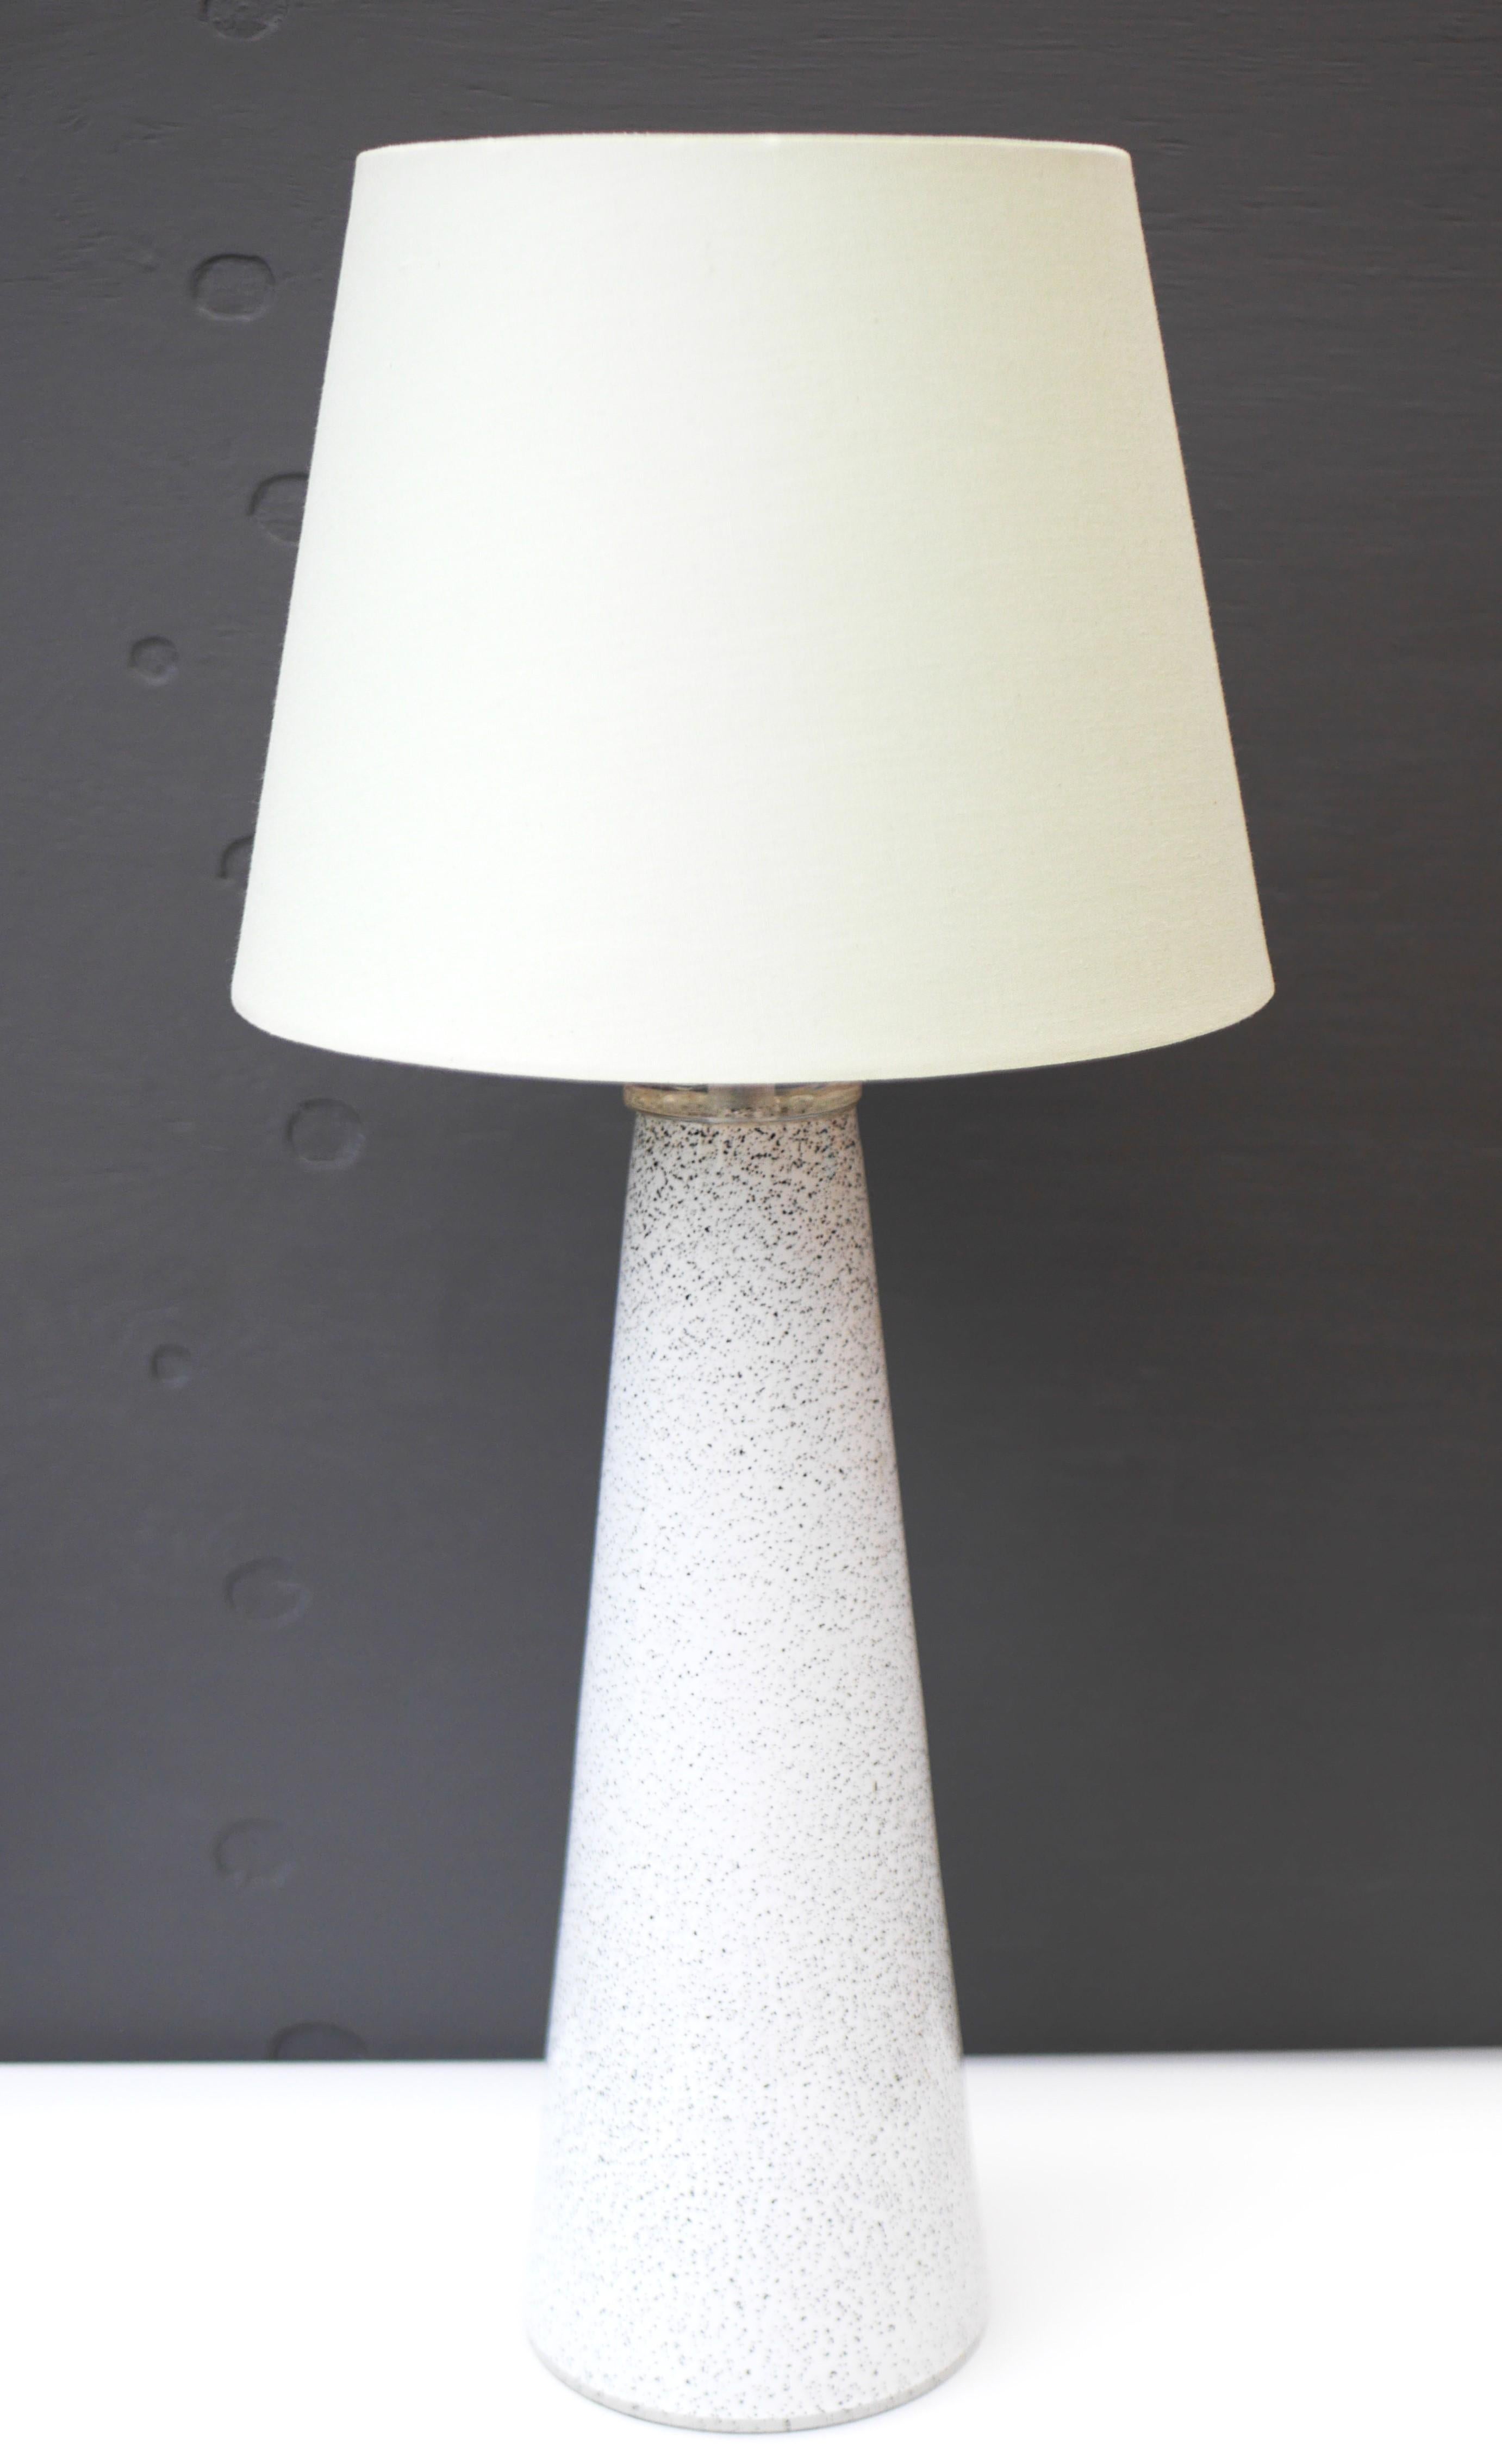 An elegant glass art table lamp made by Bengt Orup for Hyllinge Glasbruk, Sweden For Sale 2